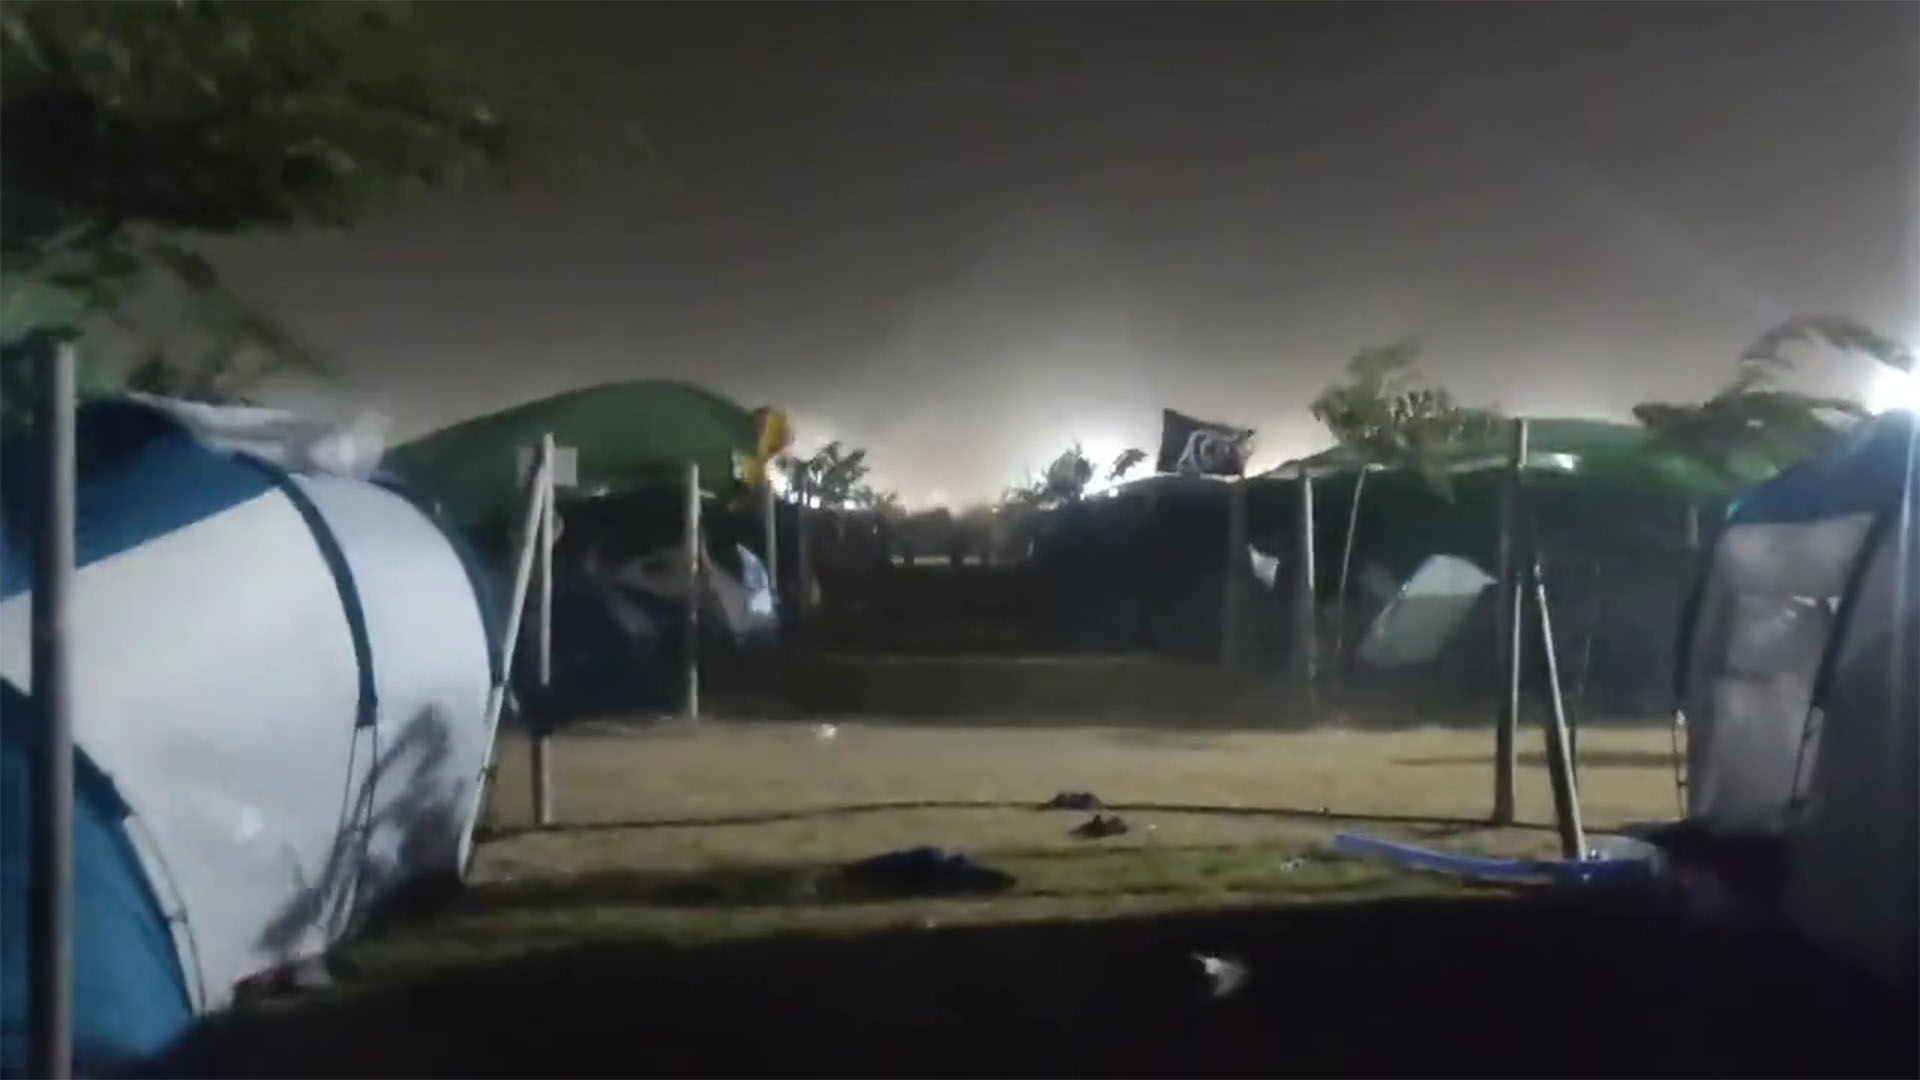 Ráfagas de viento derribaron varias estructuras durante un festival en Cullera, España: hay al menos un muerto y 40 heridos